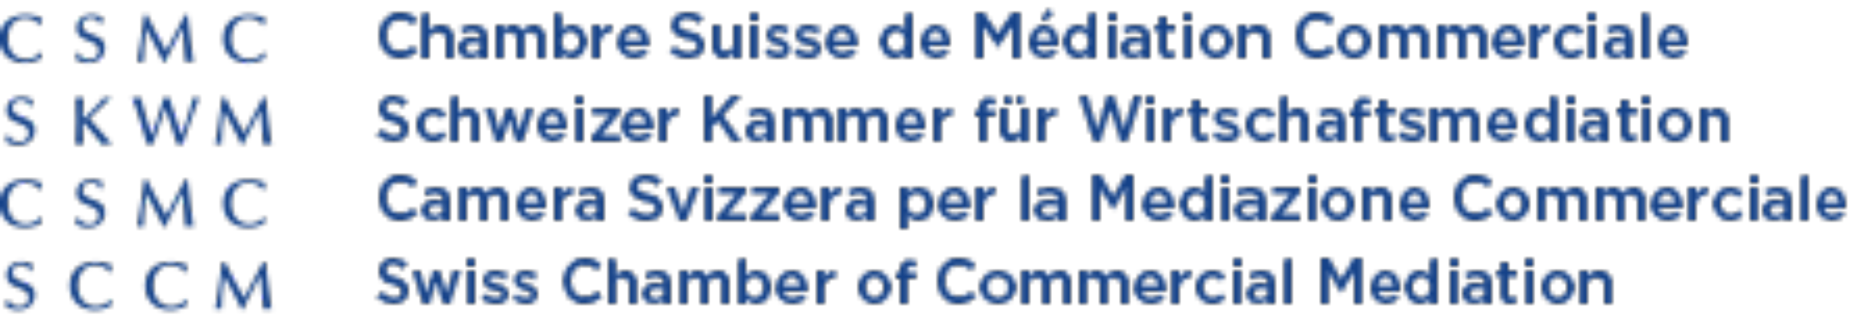 SKWM - Schweizer Kammer für Wirtschaftsmediation